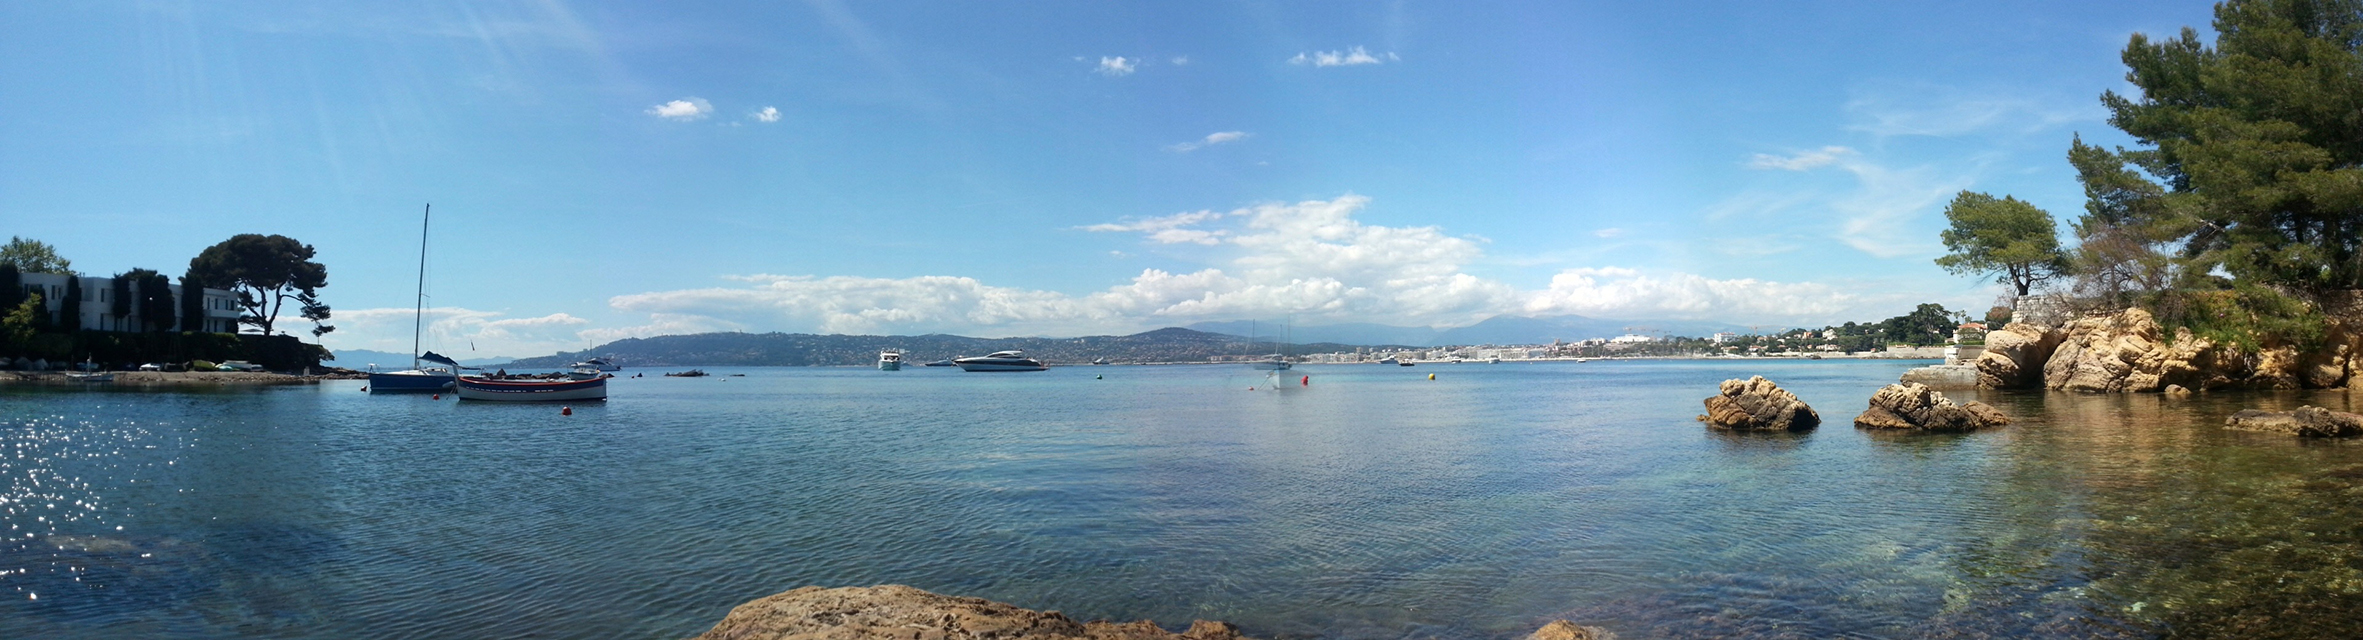 vue panoramique depuis le port de l'olivette